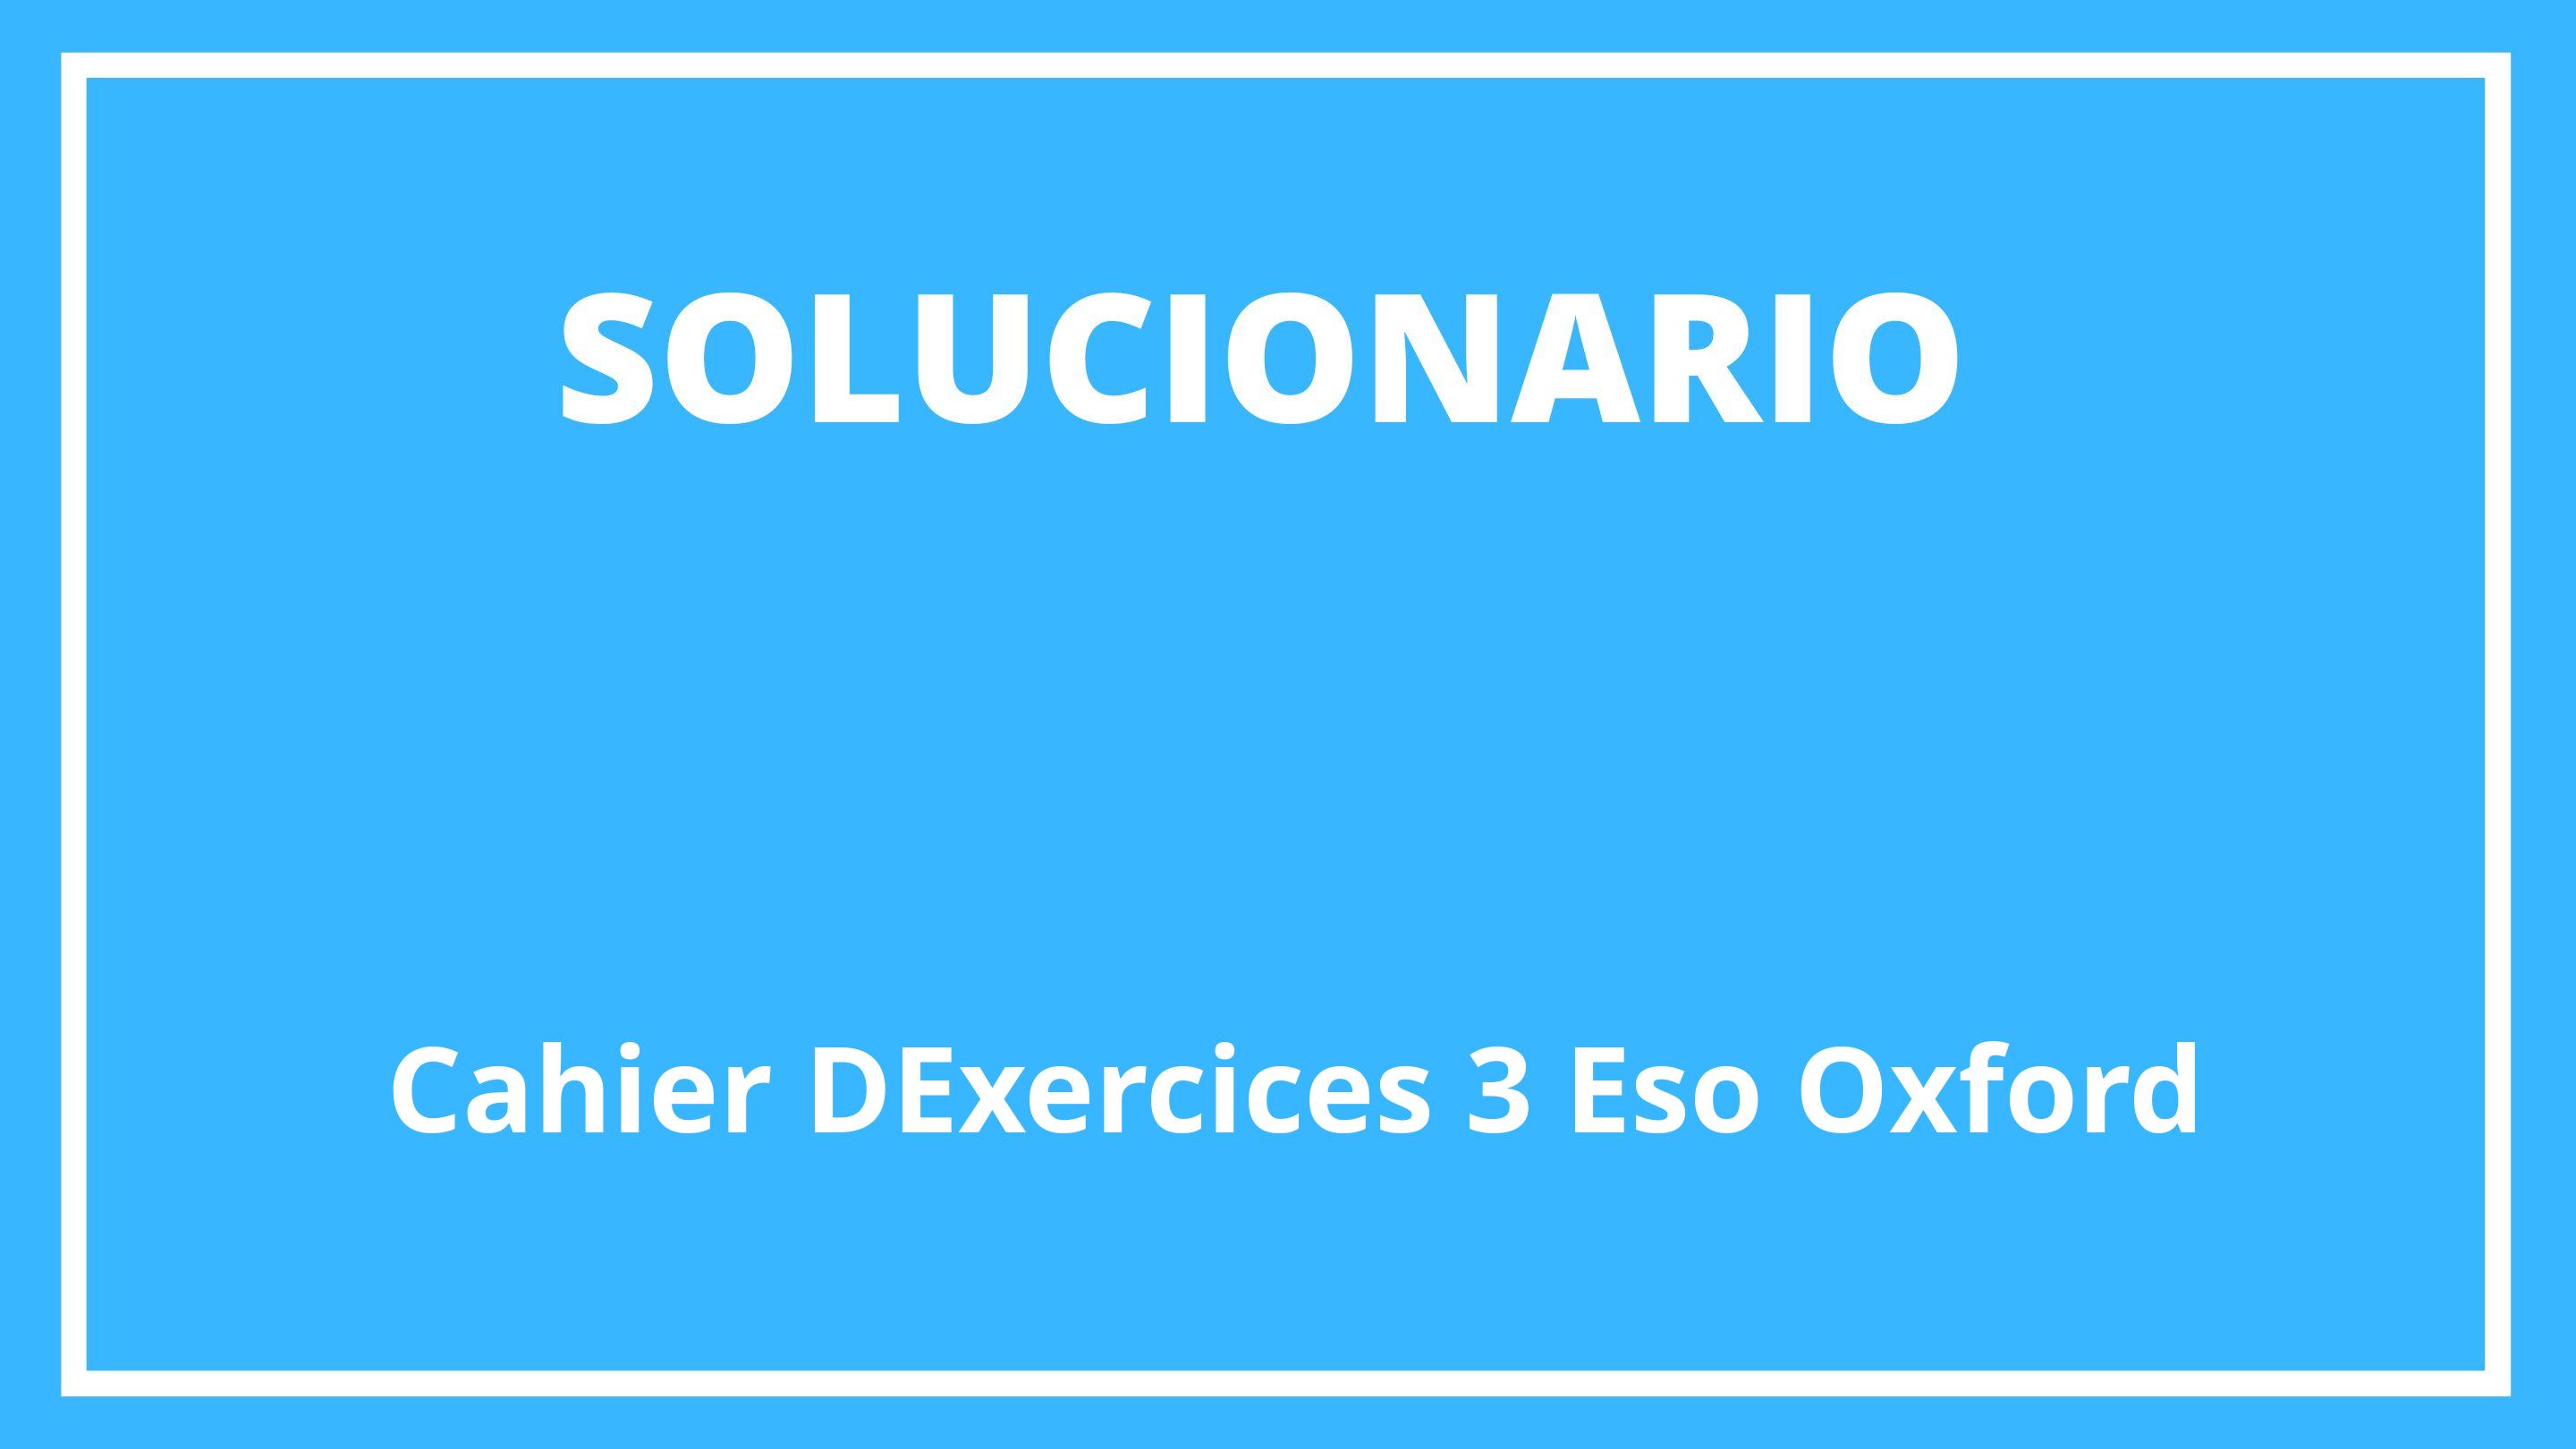 Solucionario Cahier D'Exercices 3 Eso Oxford